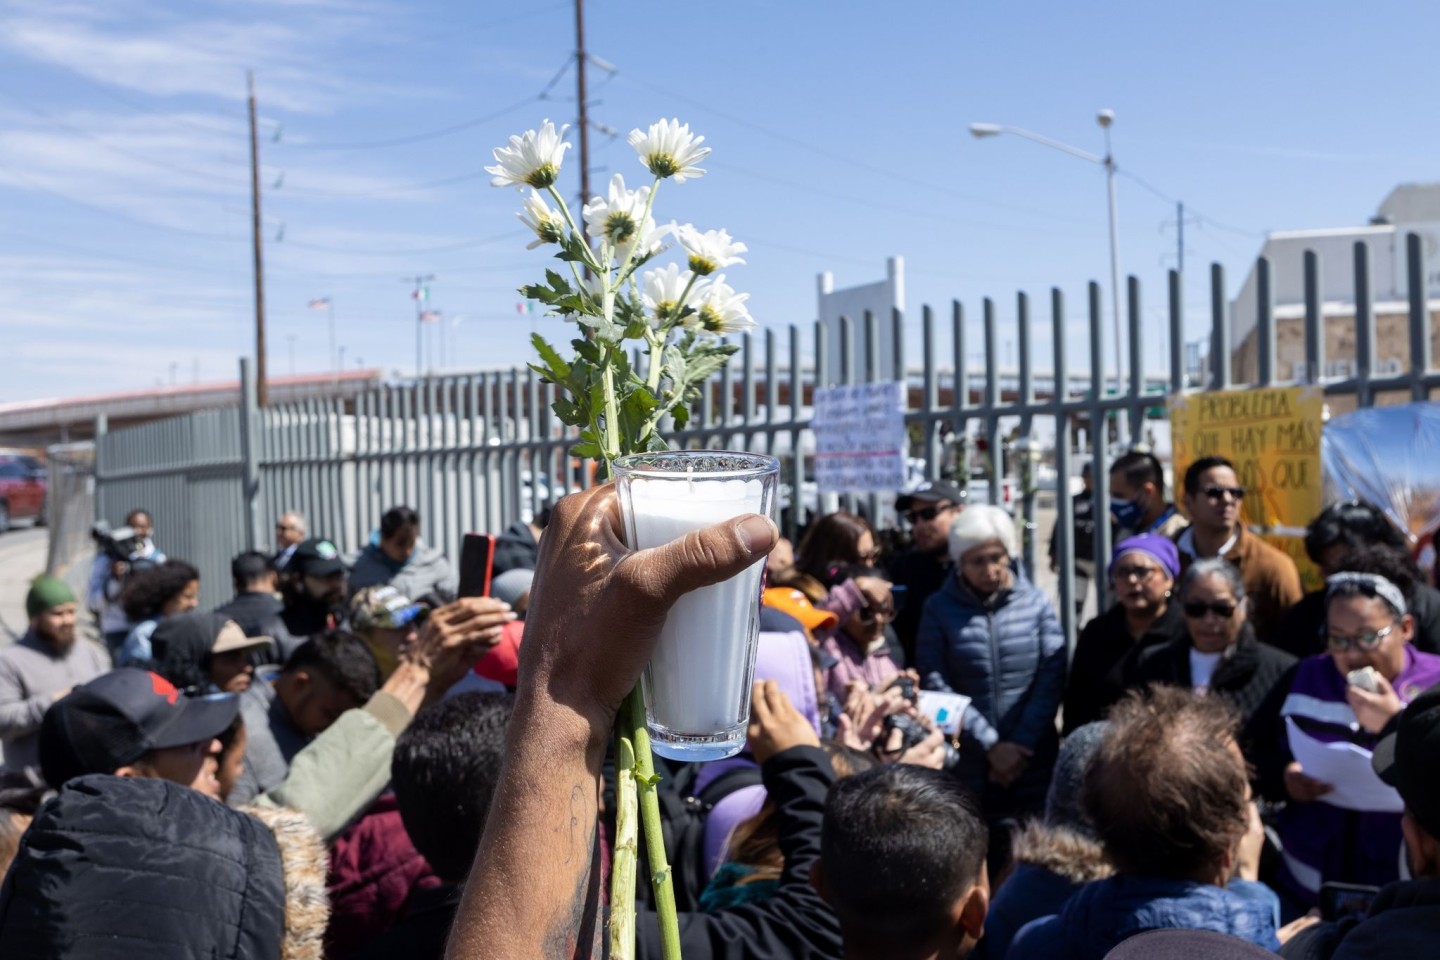 Menschen trauern vor der Sammelstelle für festgenommene Migranten in Ciudad Juárez, wo bei einem Brand mehrere Menschen ums Leben gekommen waren.